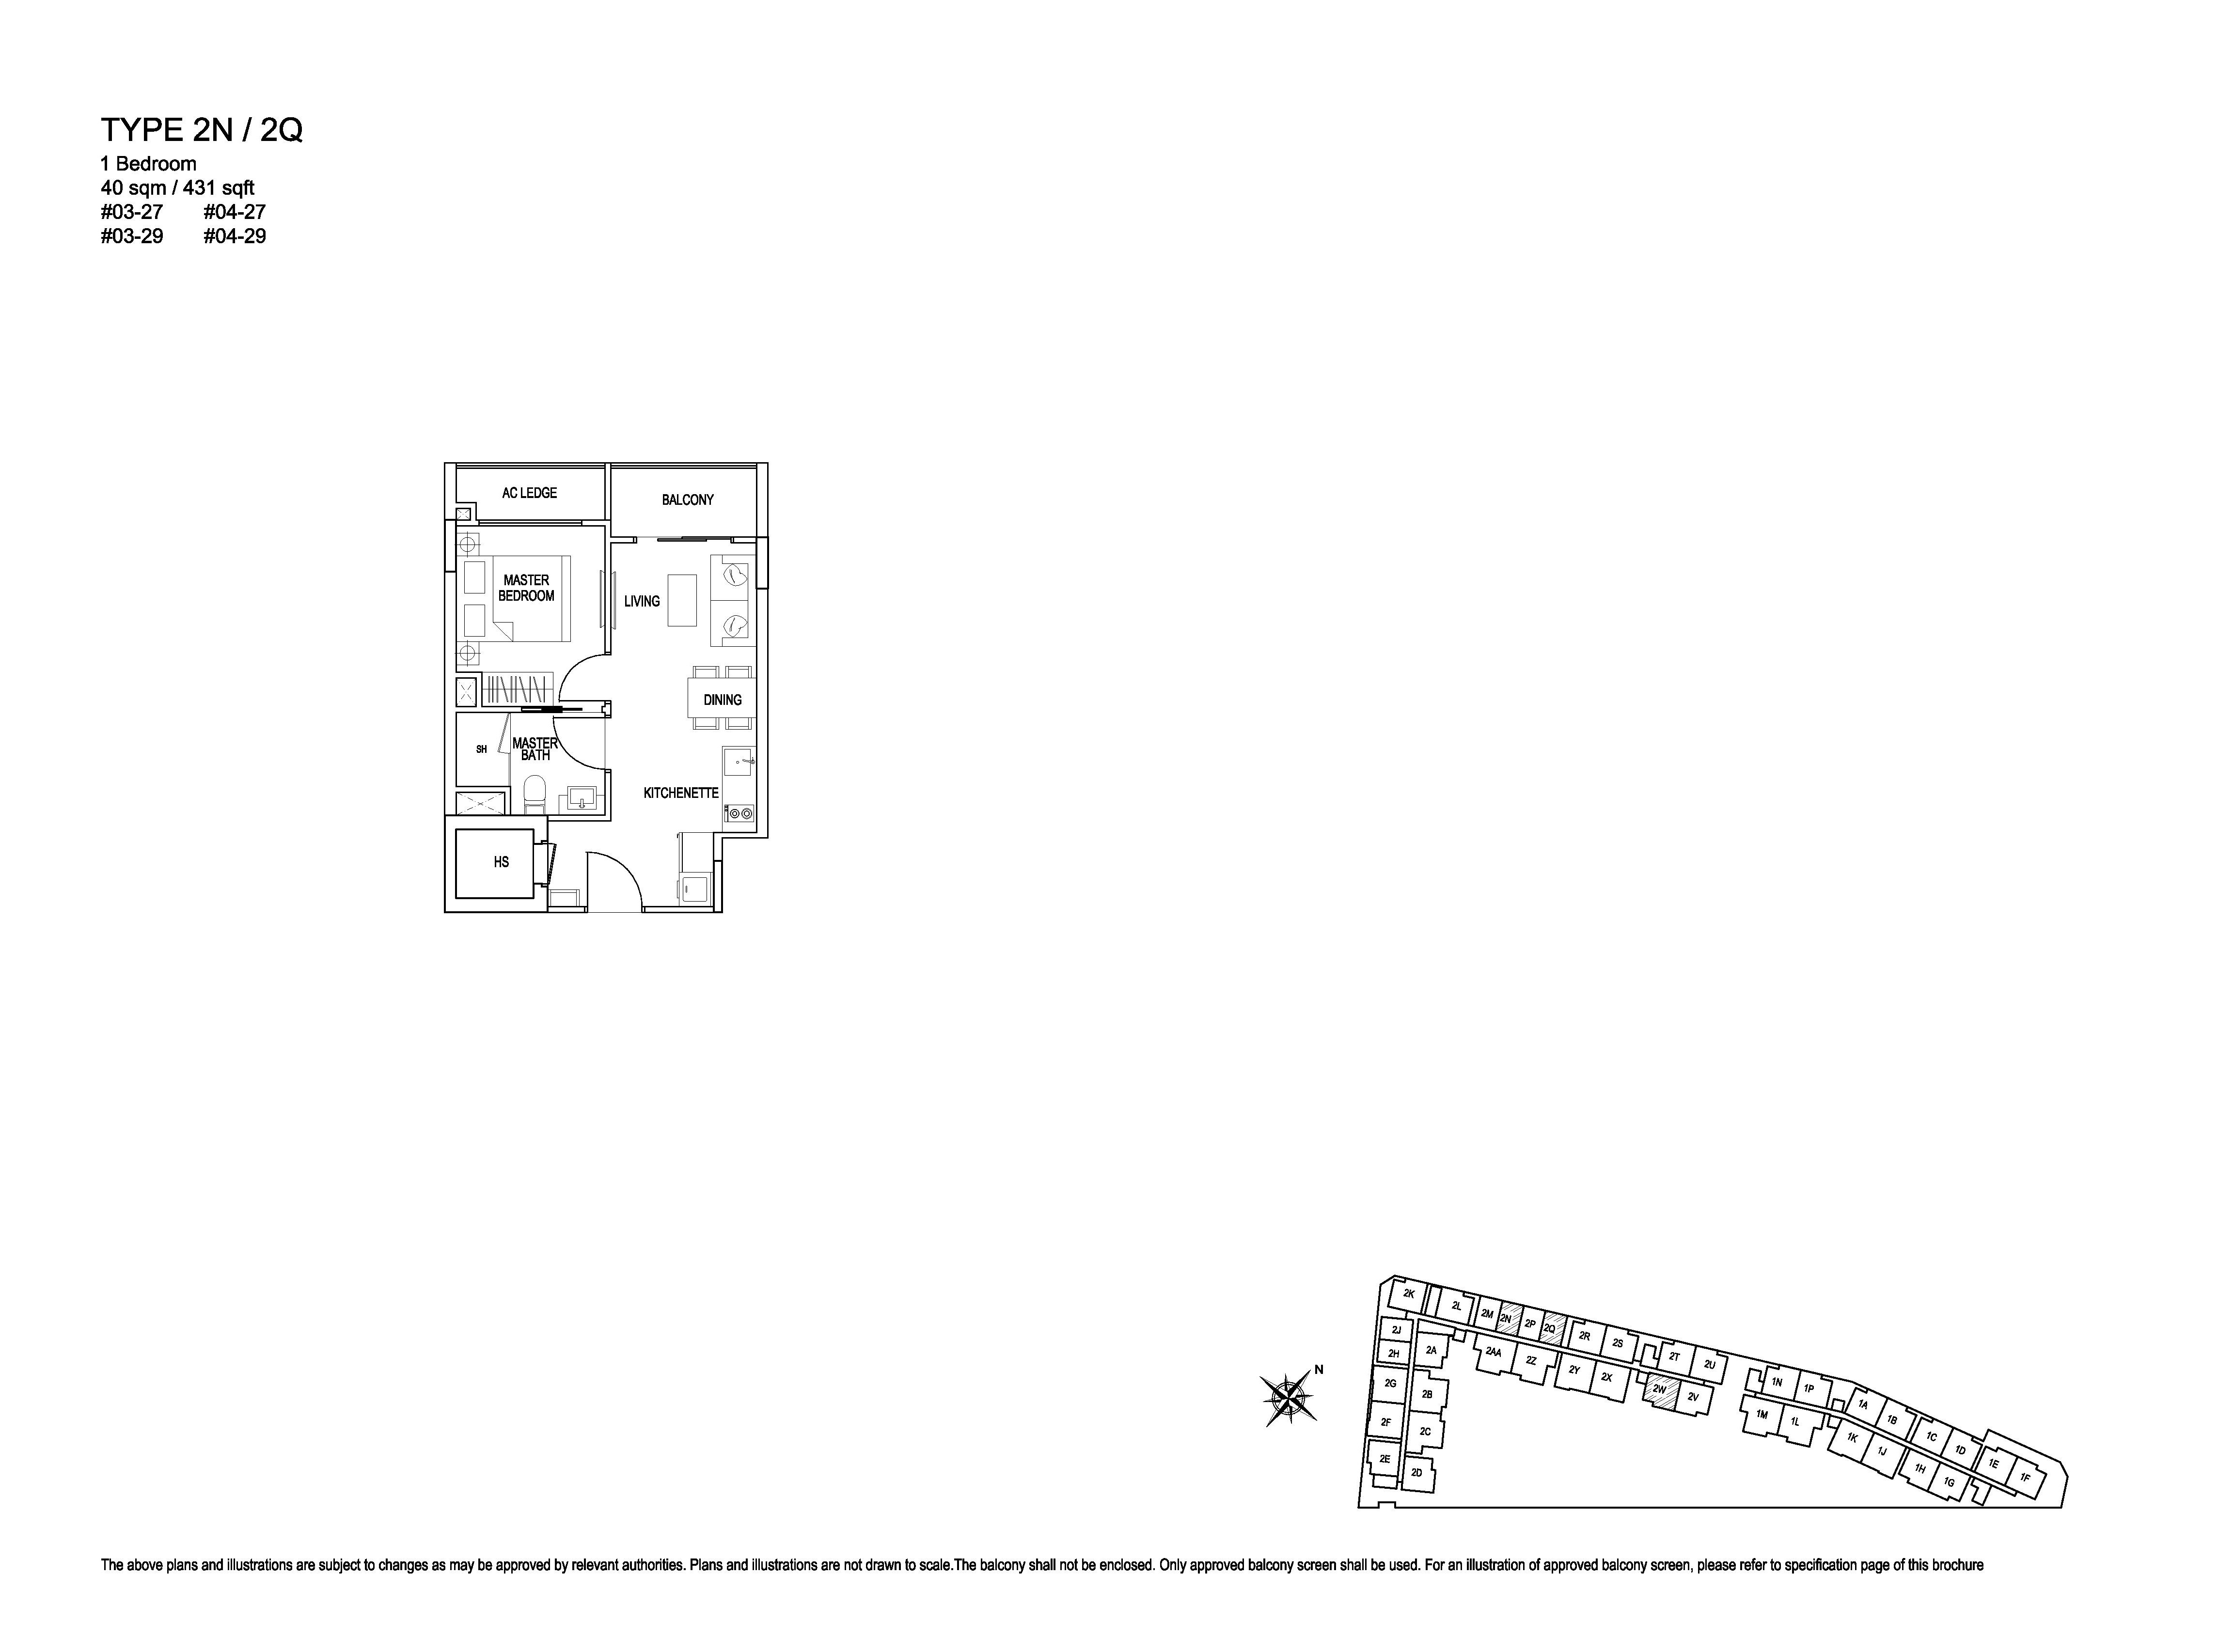 Kensington Square 1 Bedroom Floor Plans Type 2N/2Q